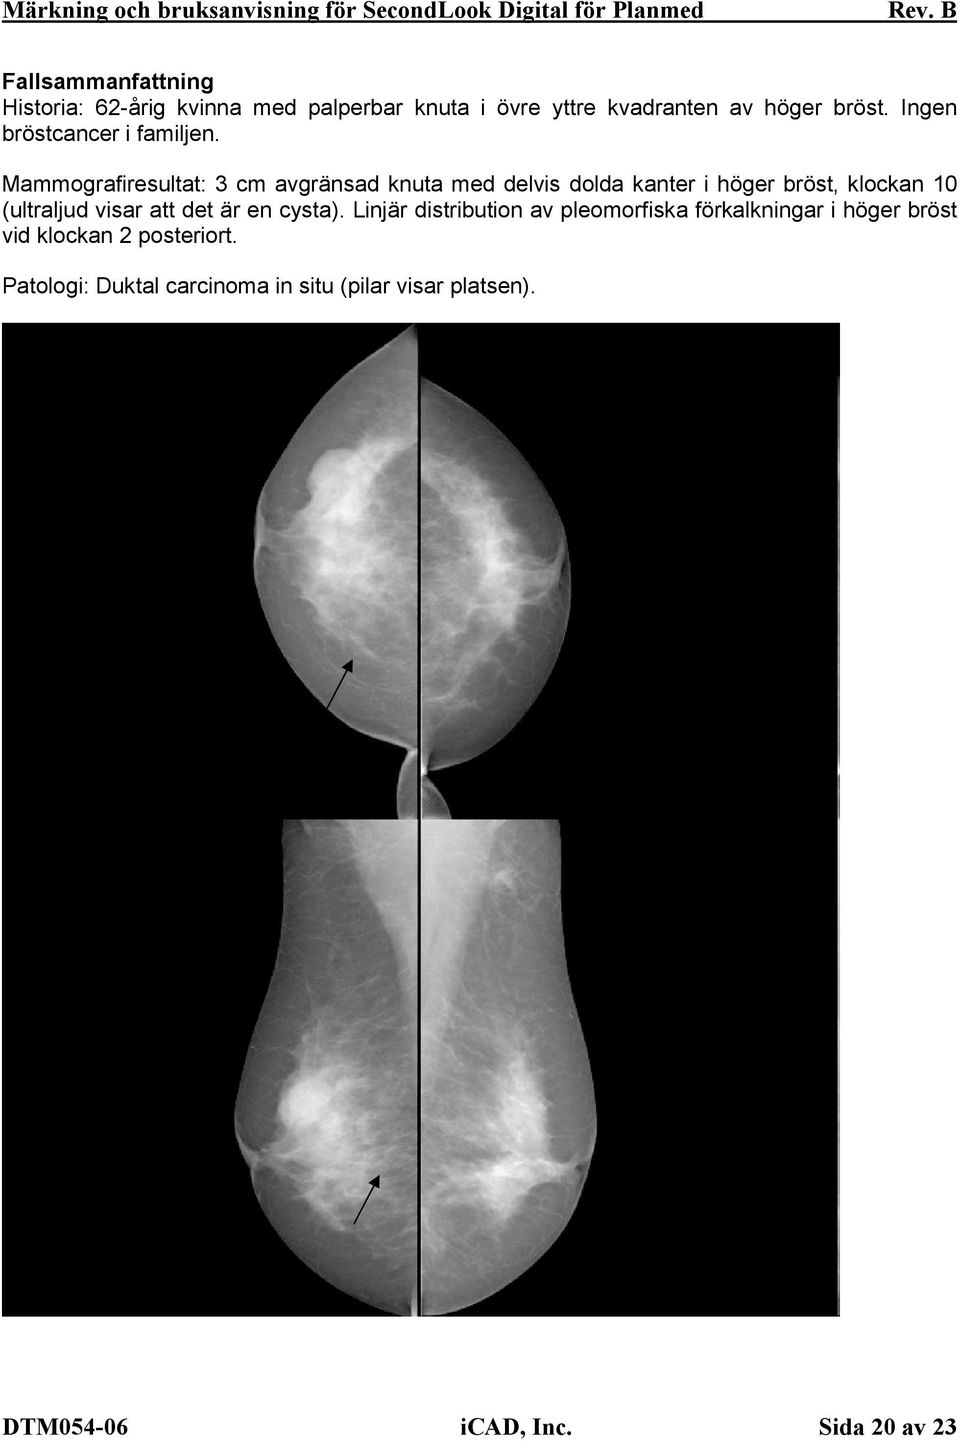 Mammografiresultat: 3 cm avgränsad knuta med delvis dolda kanter i höger bröst, klockan 10 (ultraljud visar att